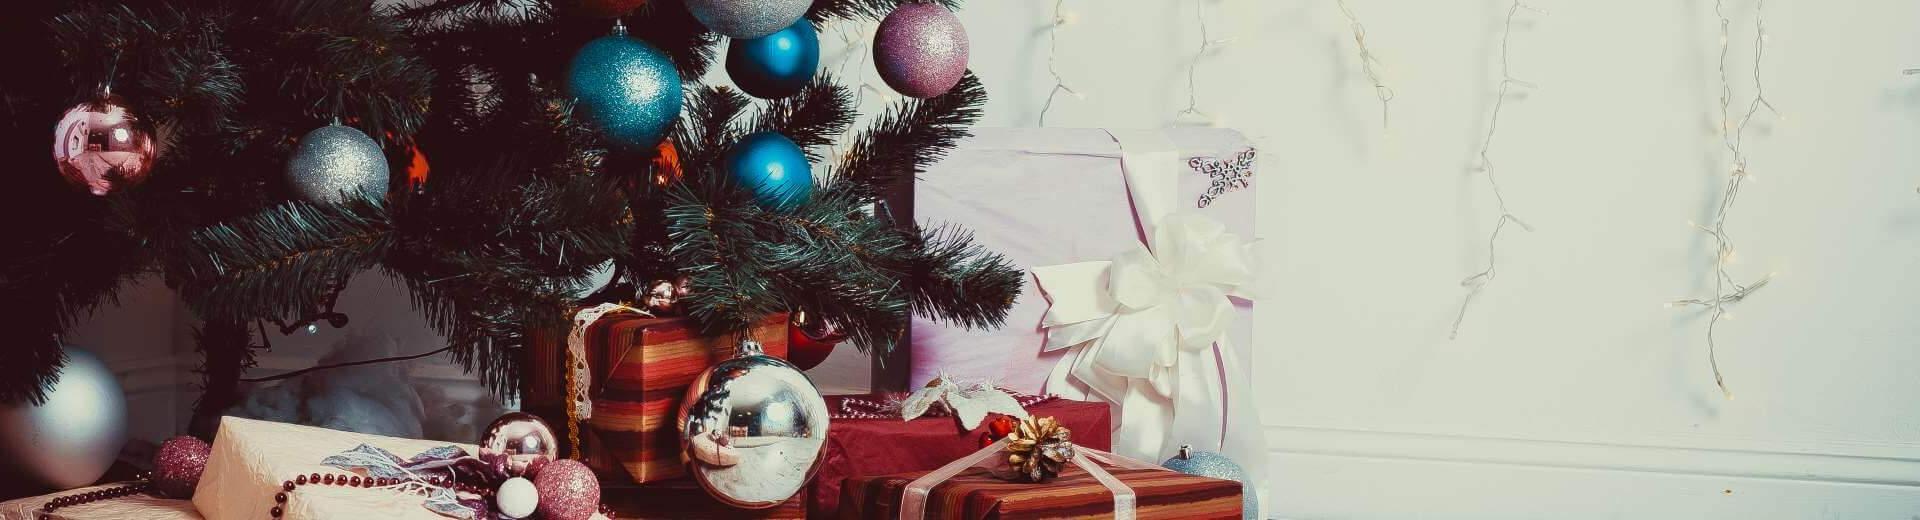 Weihnachten im Ferienhaus in Urmein | Casamundo - Casamundo